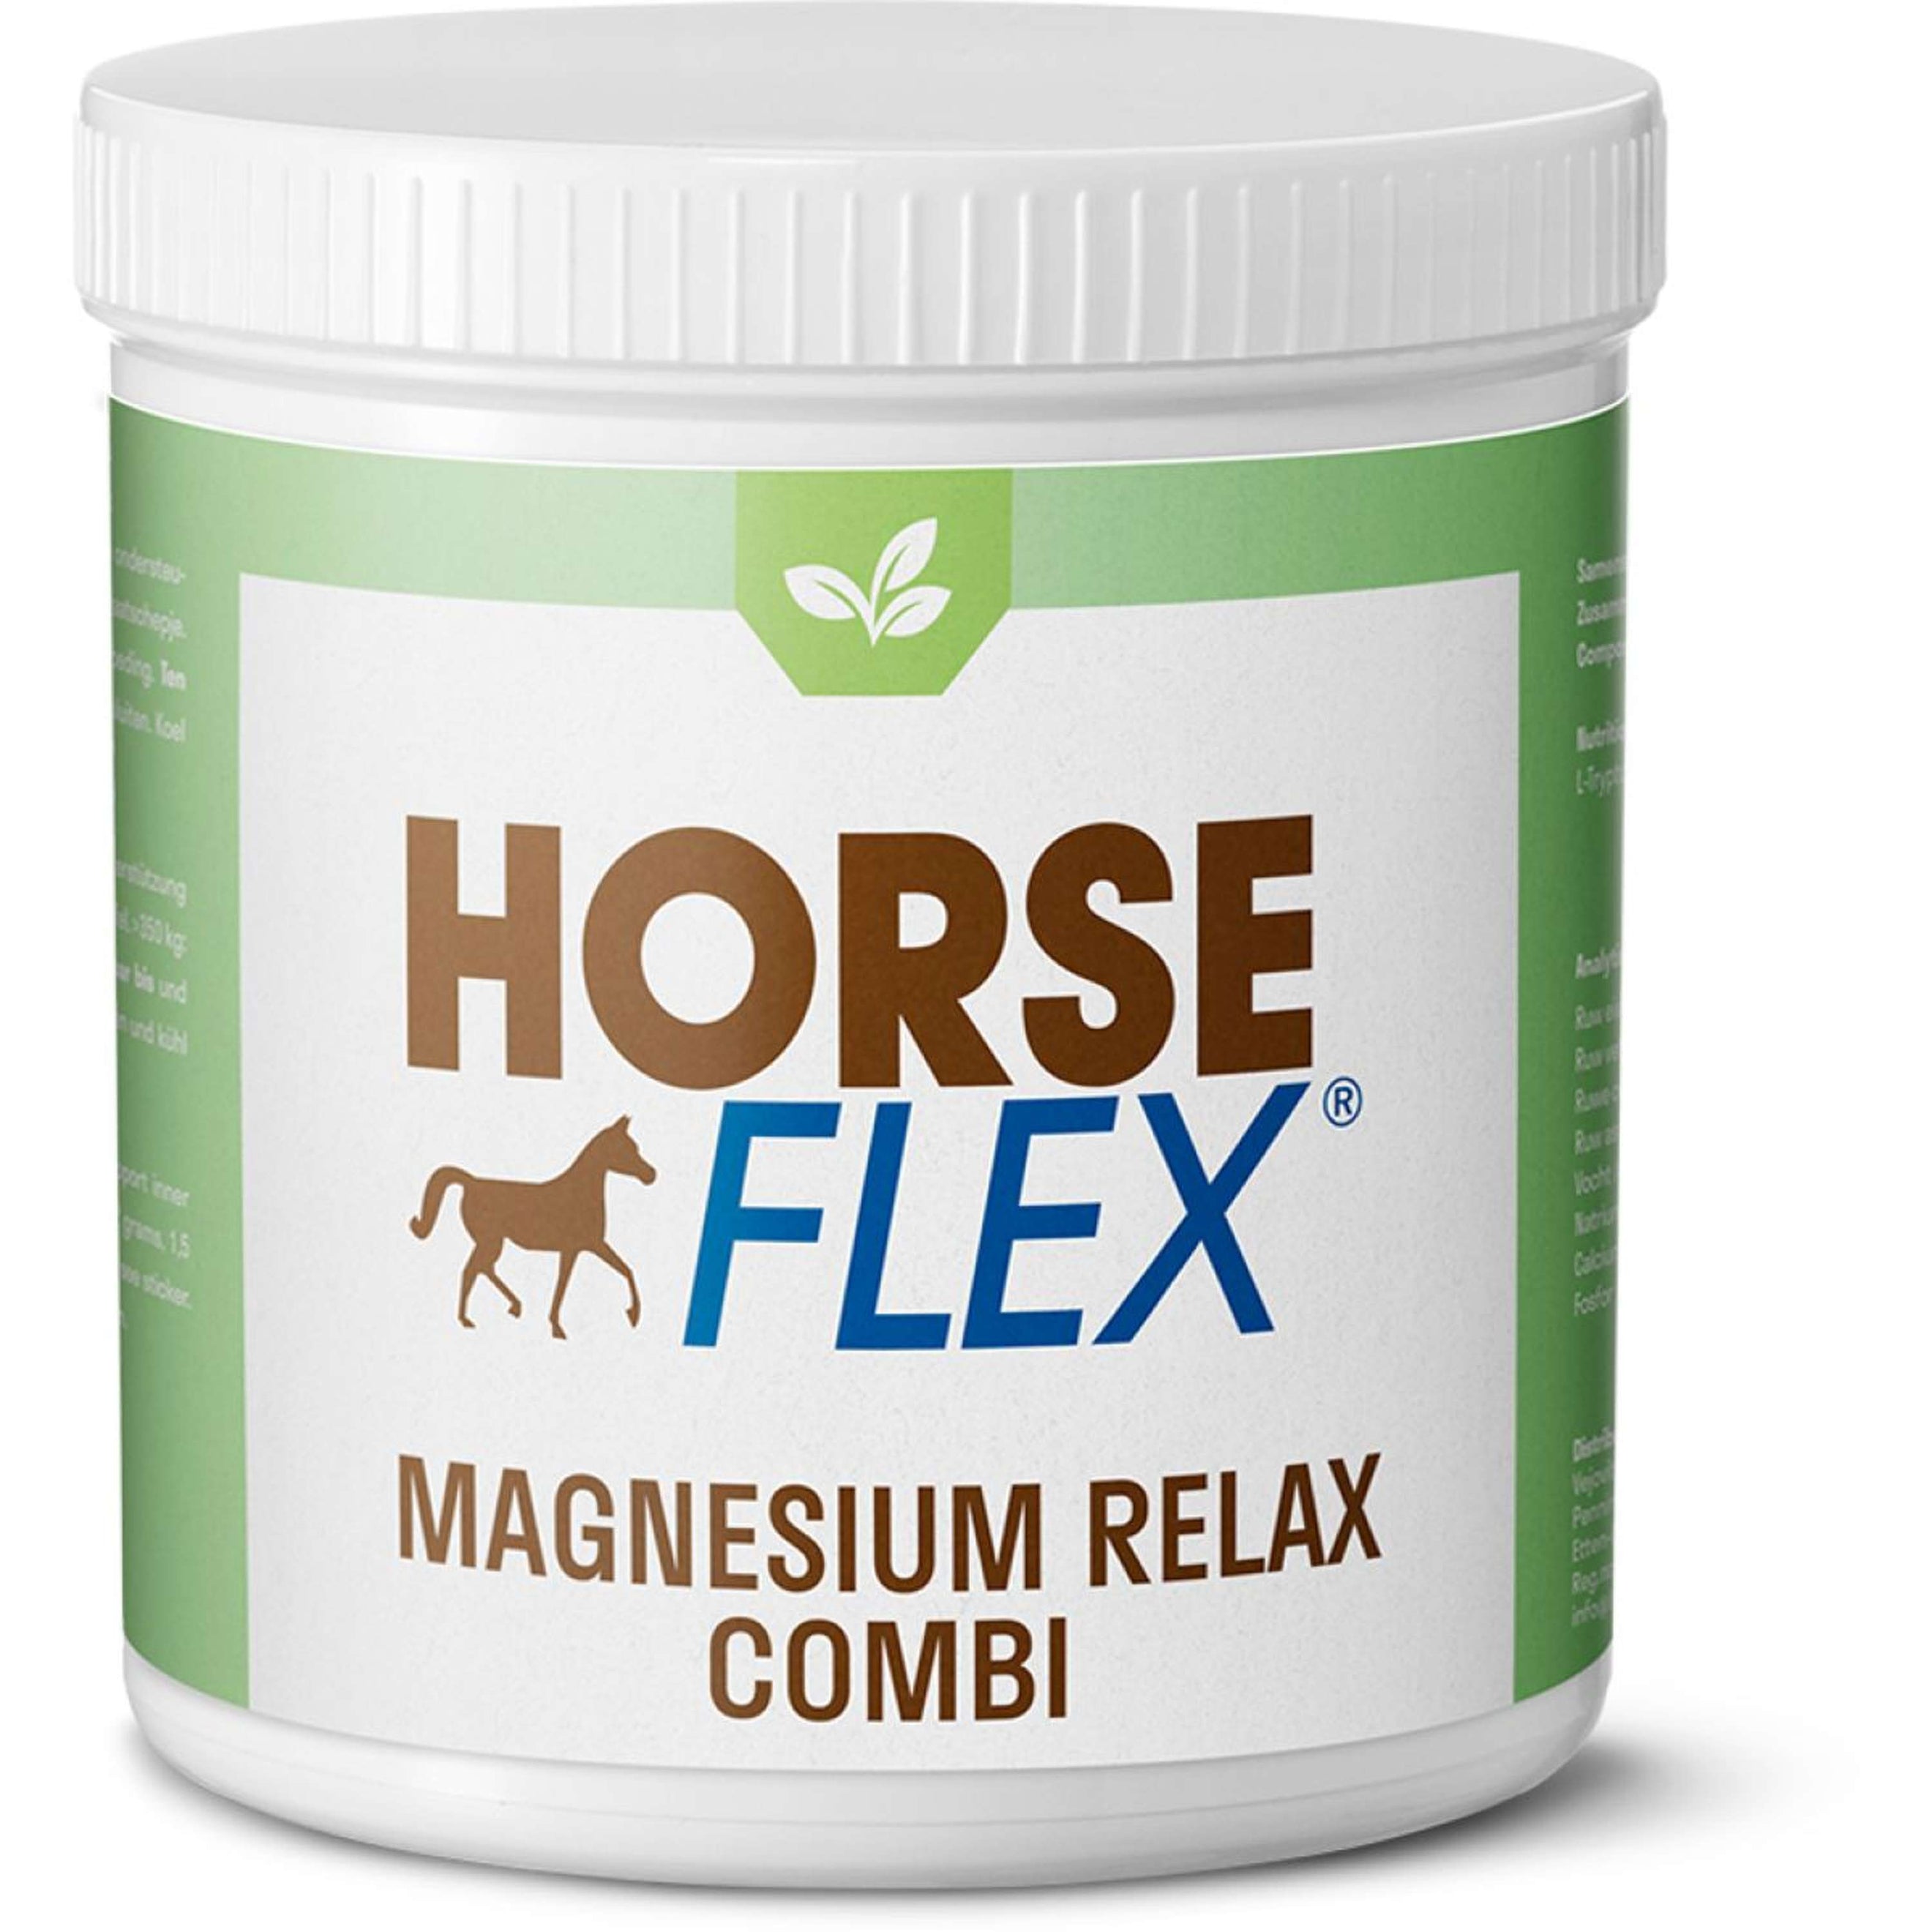 HorseFlex magnésium combo détente